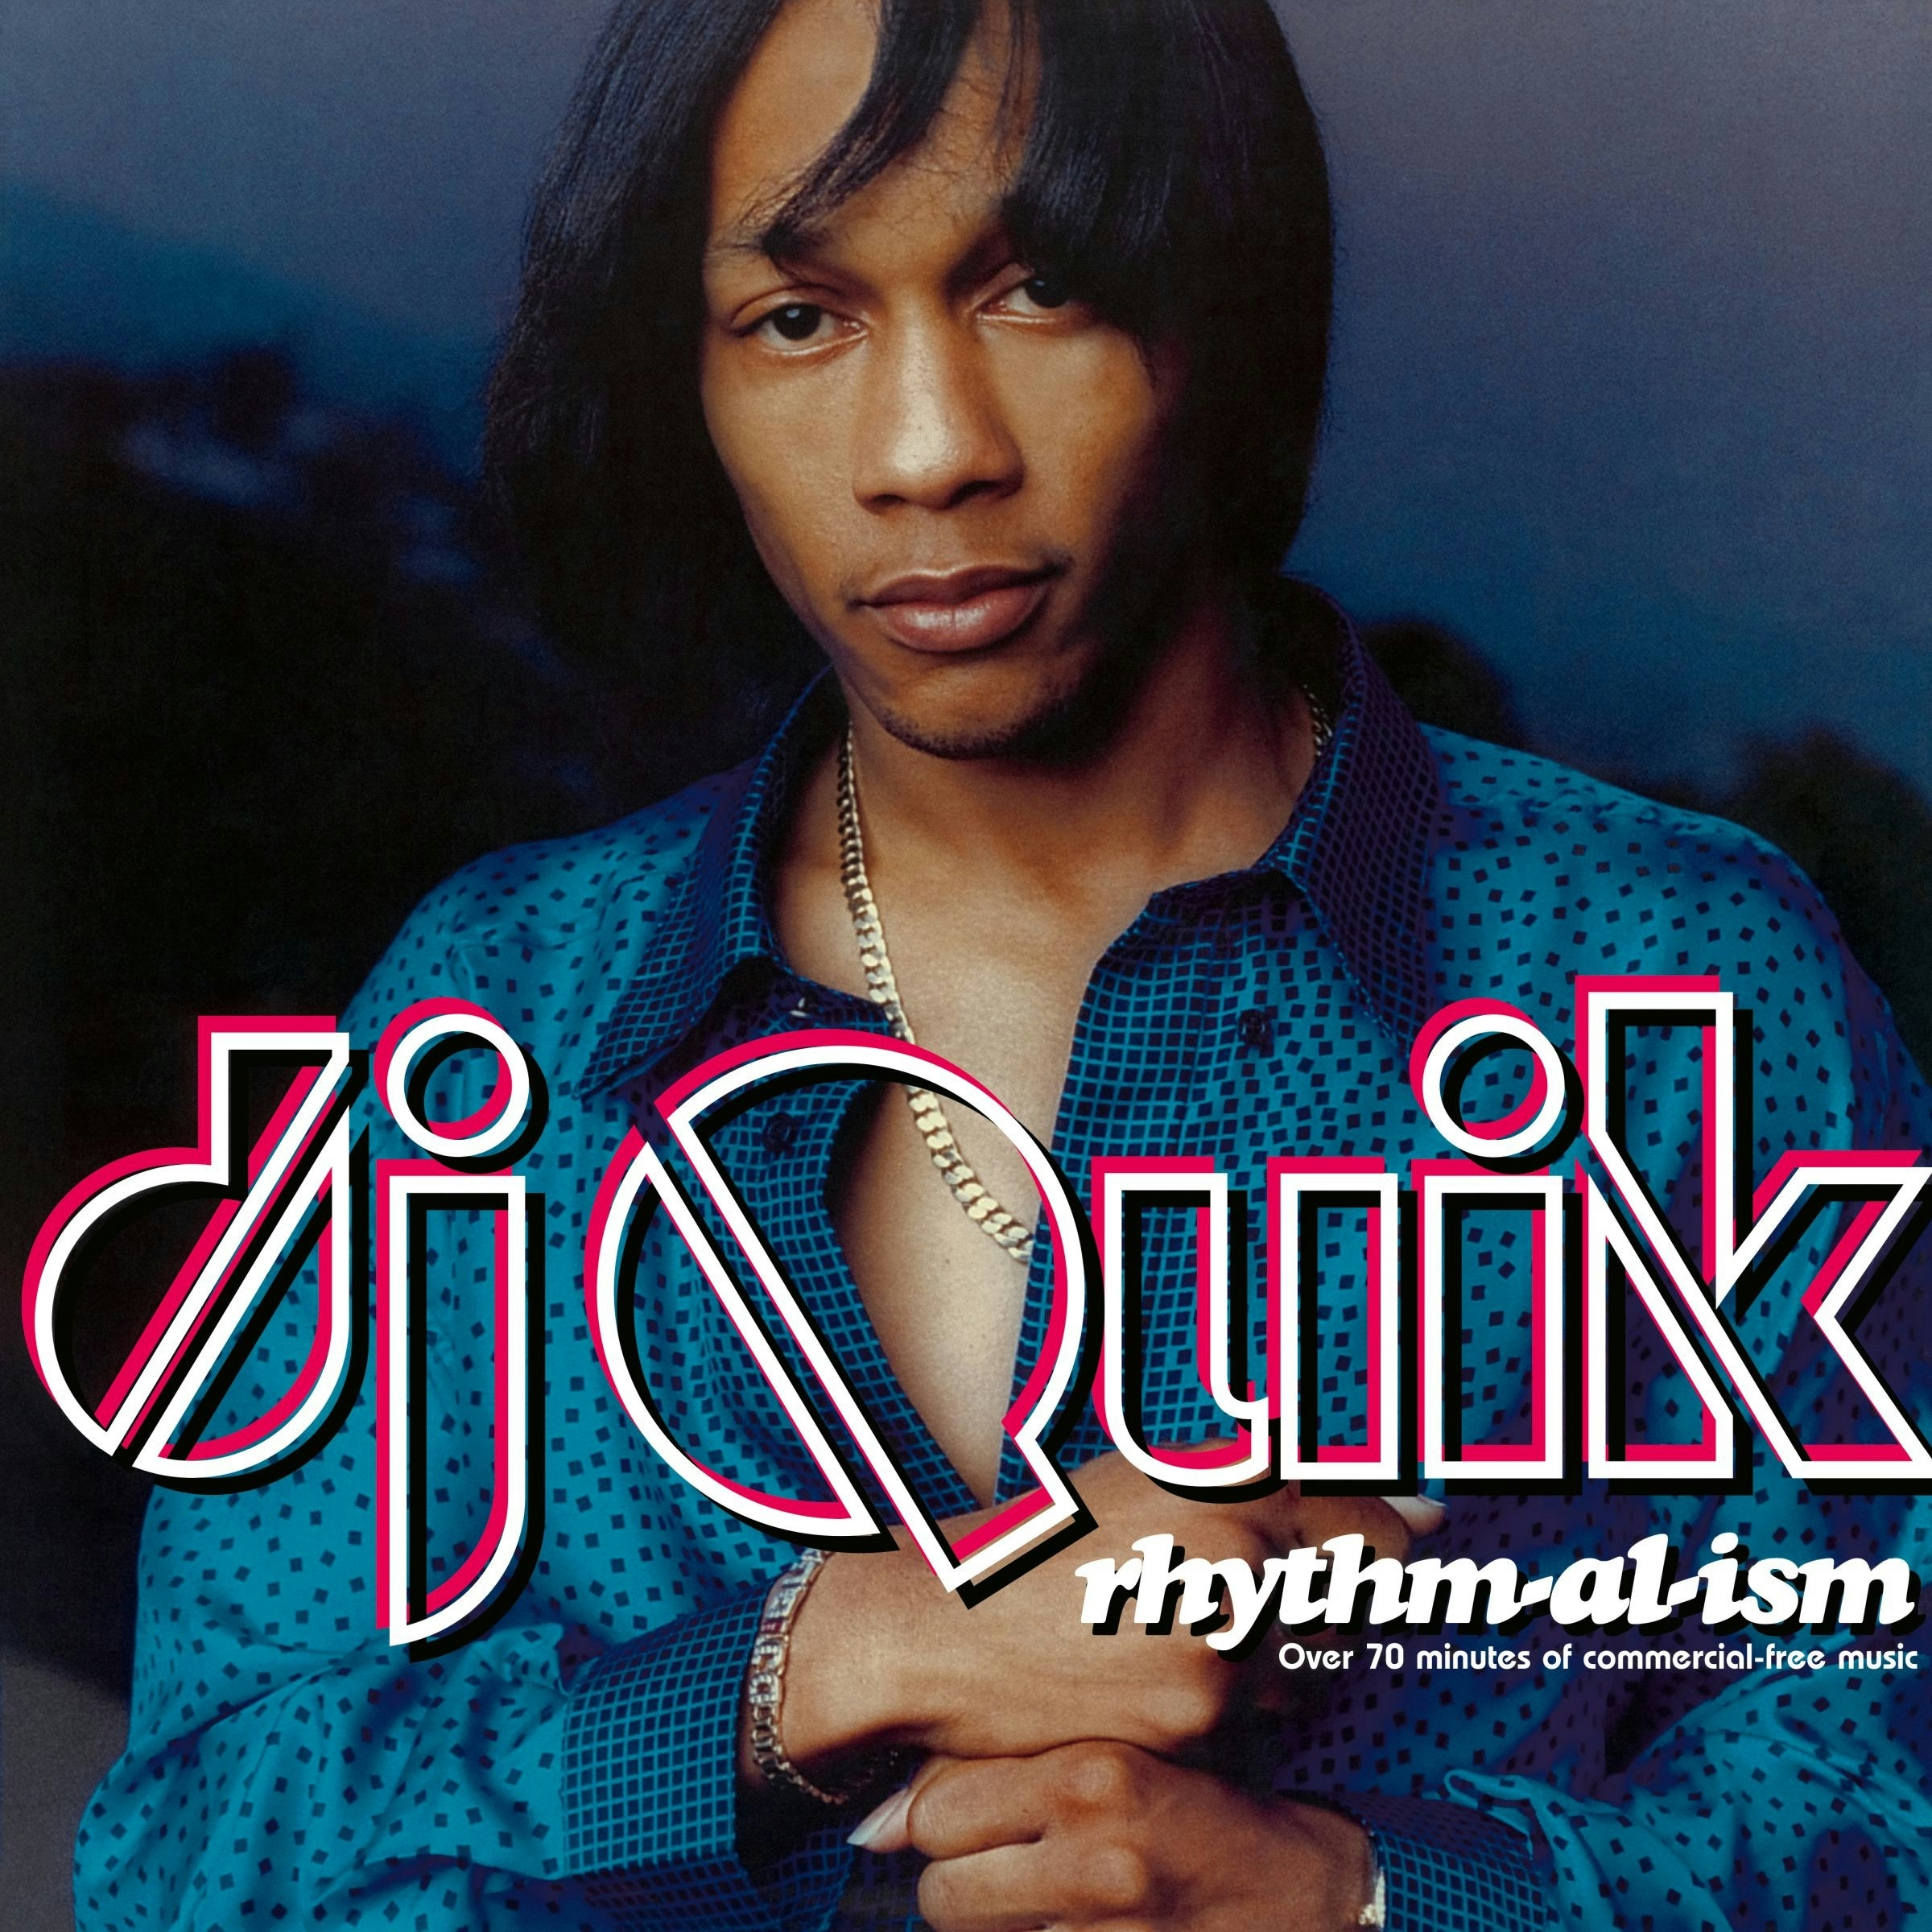 Album artwork for Album artwork for Rhythm-al-ism by DJ Quik by Rhythm-al-ism - DJ Quik